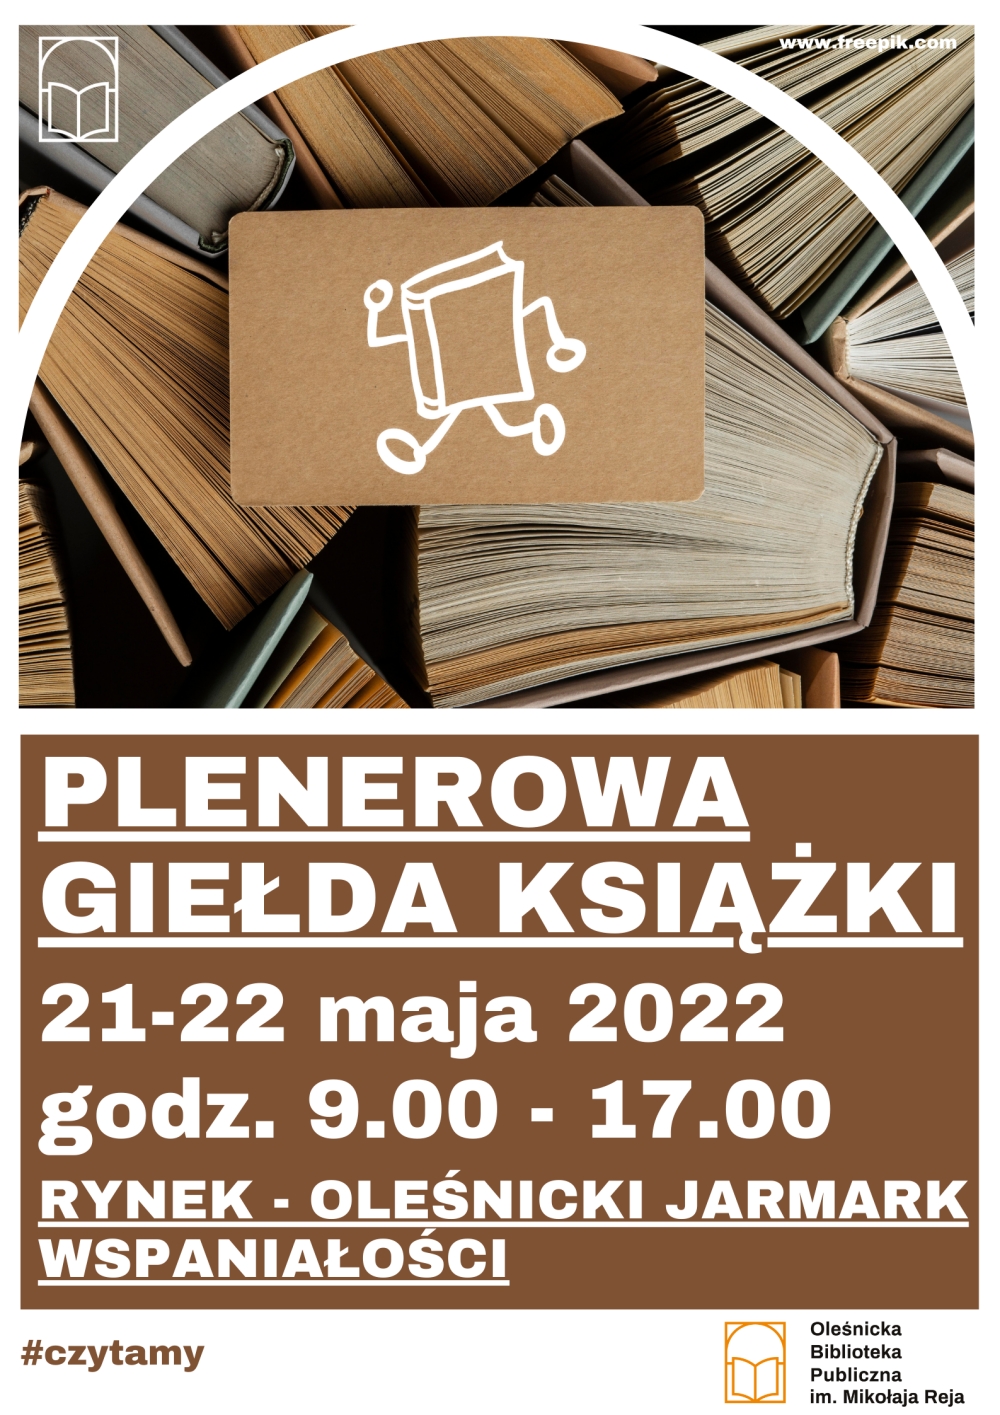 Plakat promujący plenerową Giełdę Książki na Rynku w Oleśnicy w dniach 21-22 maja